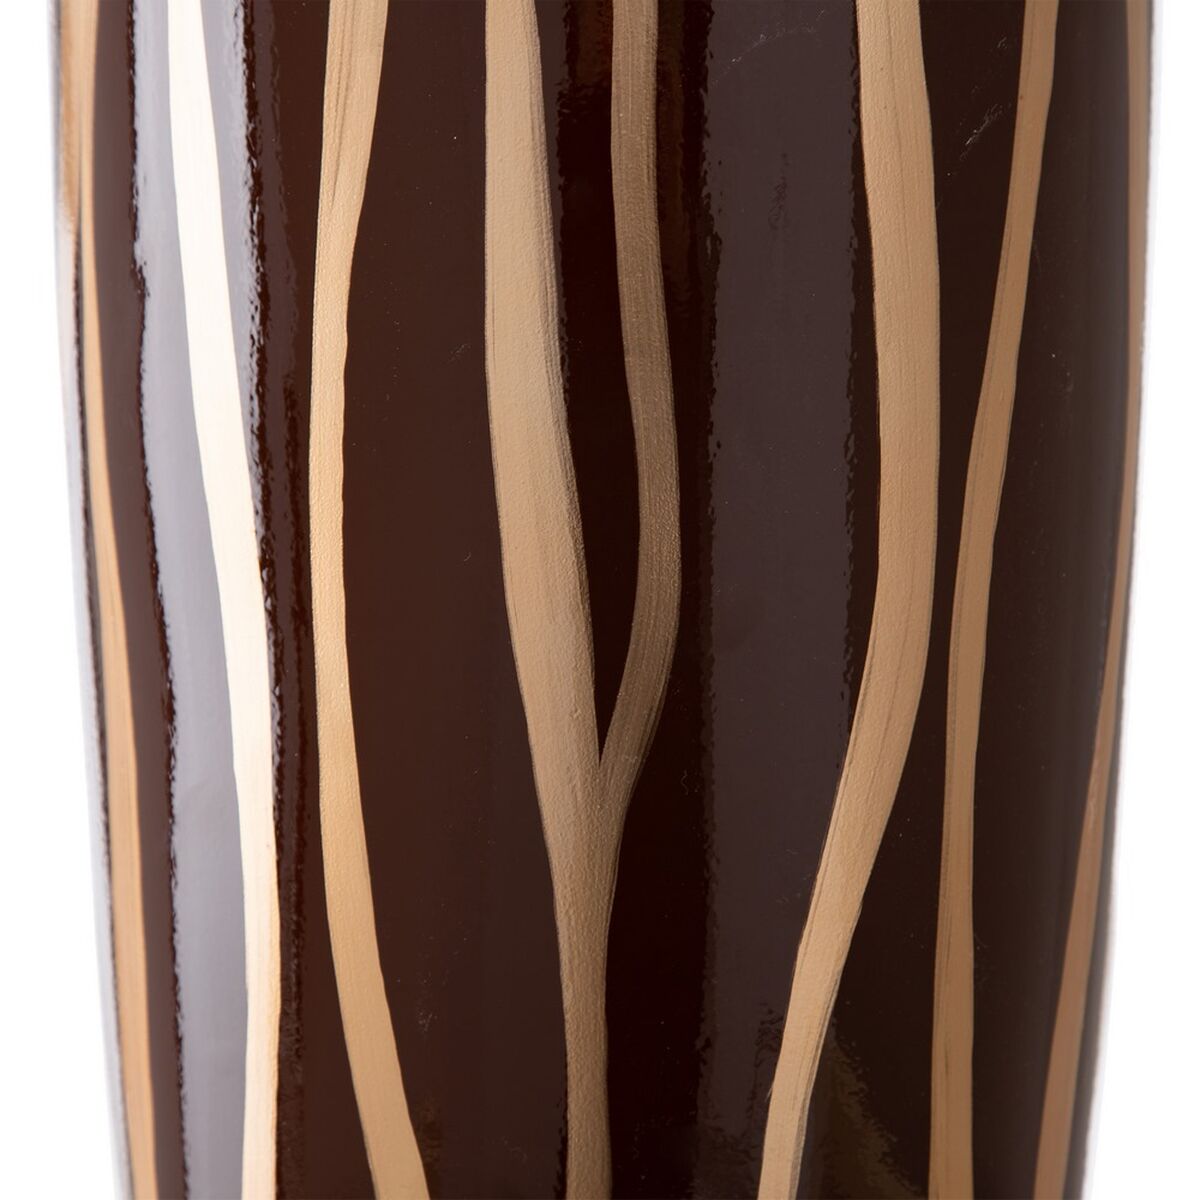 Vase 21 x 21 x 58,5 cm Zebra Ceramic Golden Brown